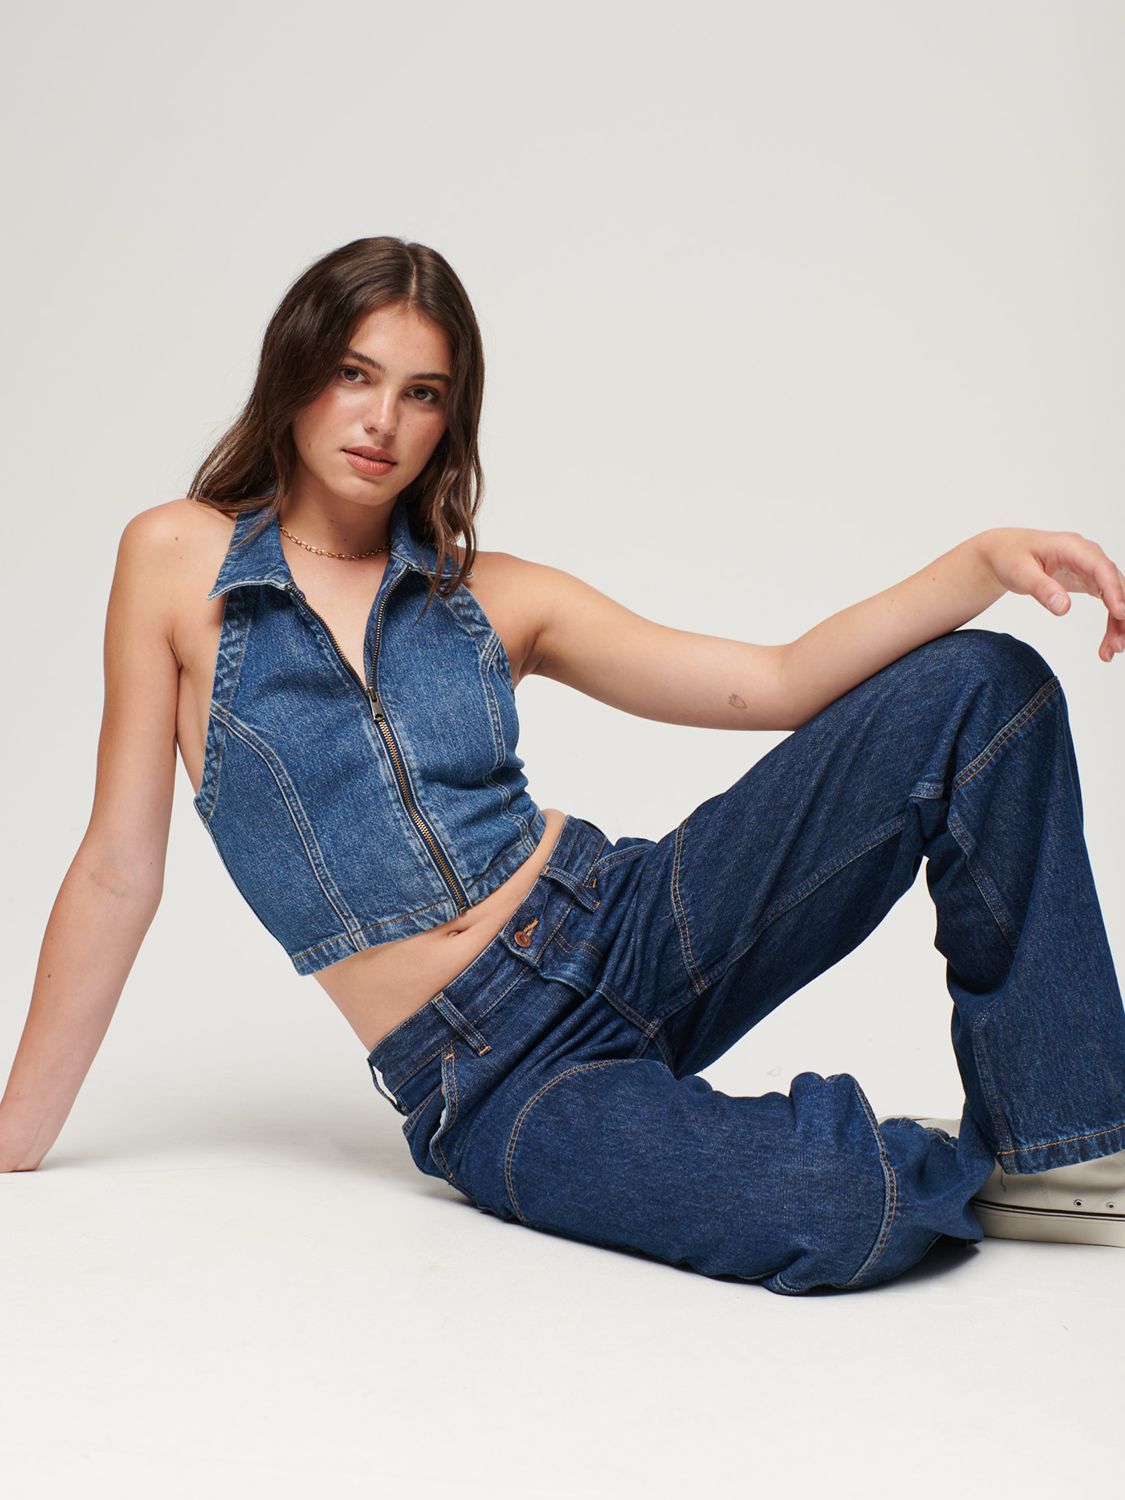 Carpenter Denim Jeans – Harper & Lewis